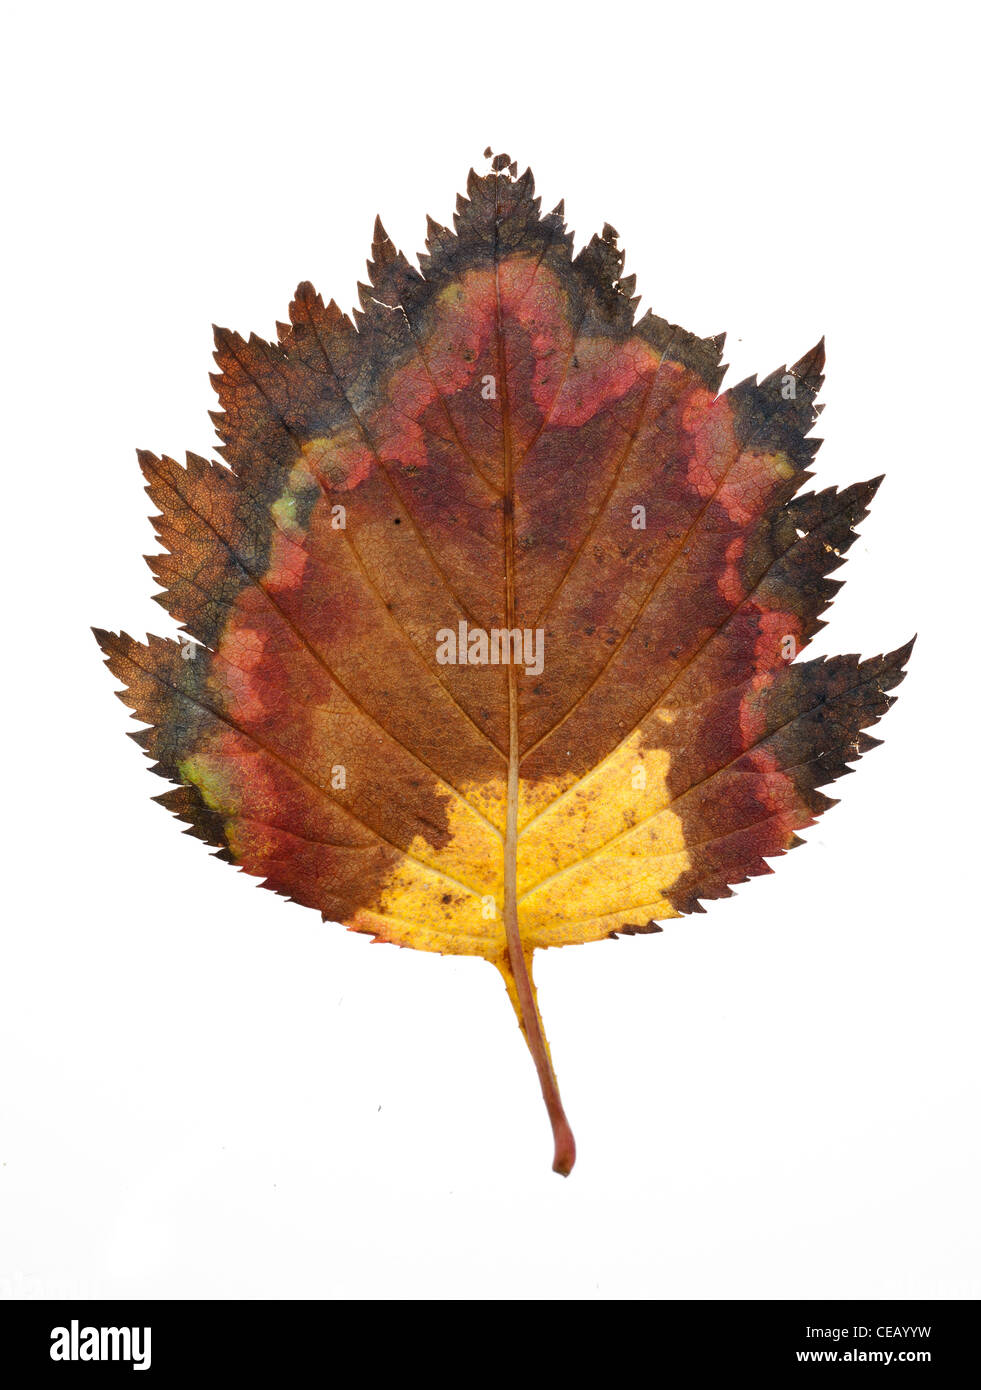 Autumn leaf on isolated white background. Stock Photo